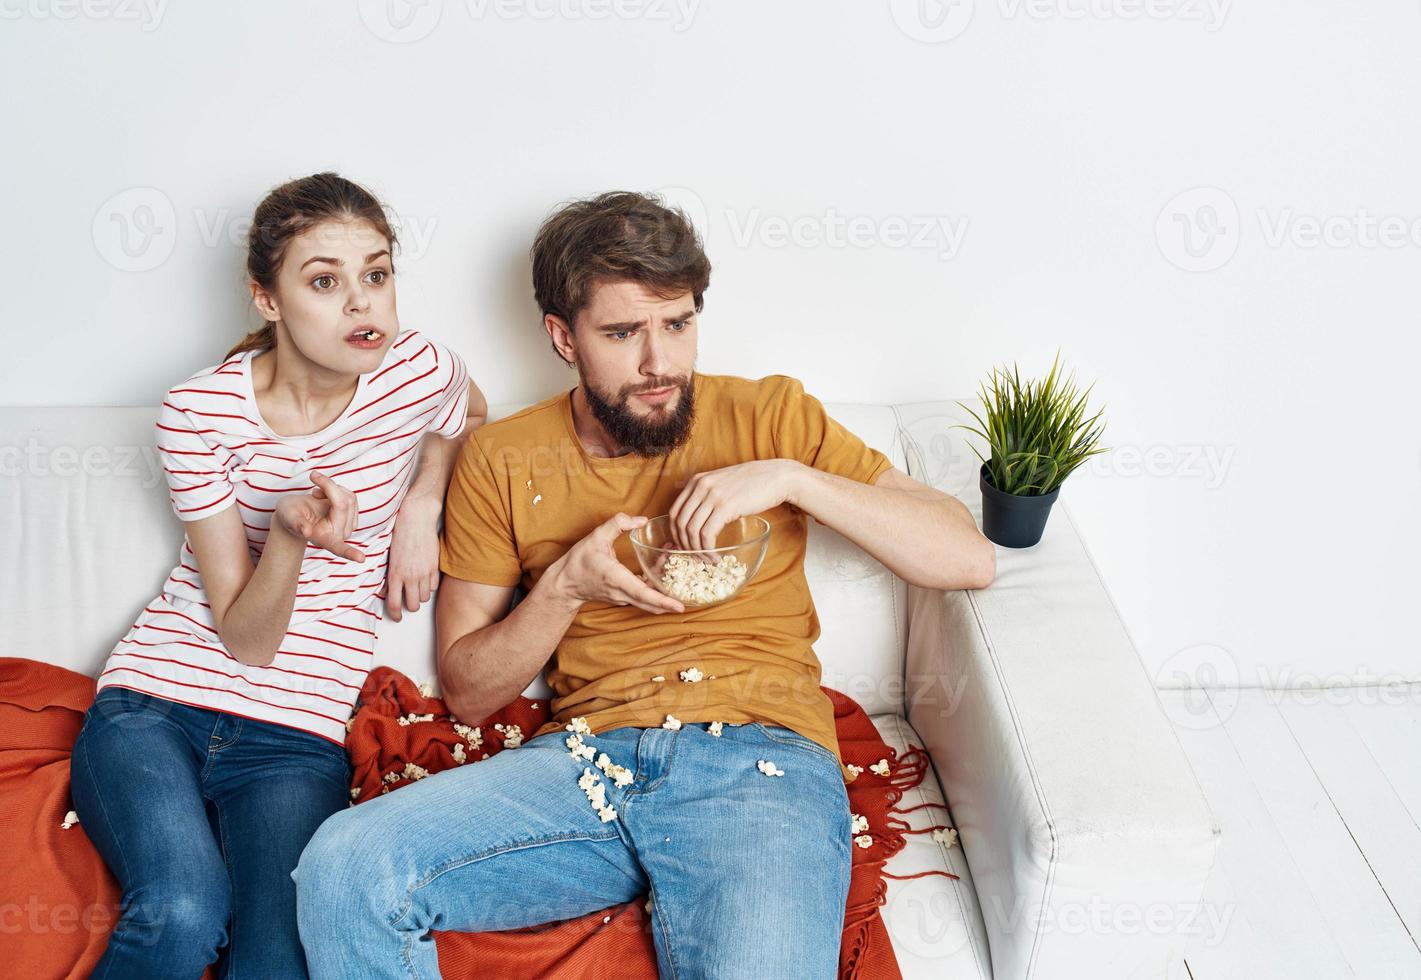 interesado mujer y barbado hombre sentar en el sofá palomitas de maiz en un plato y flor en un maceta foto